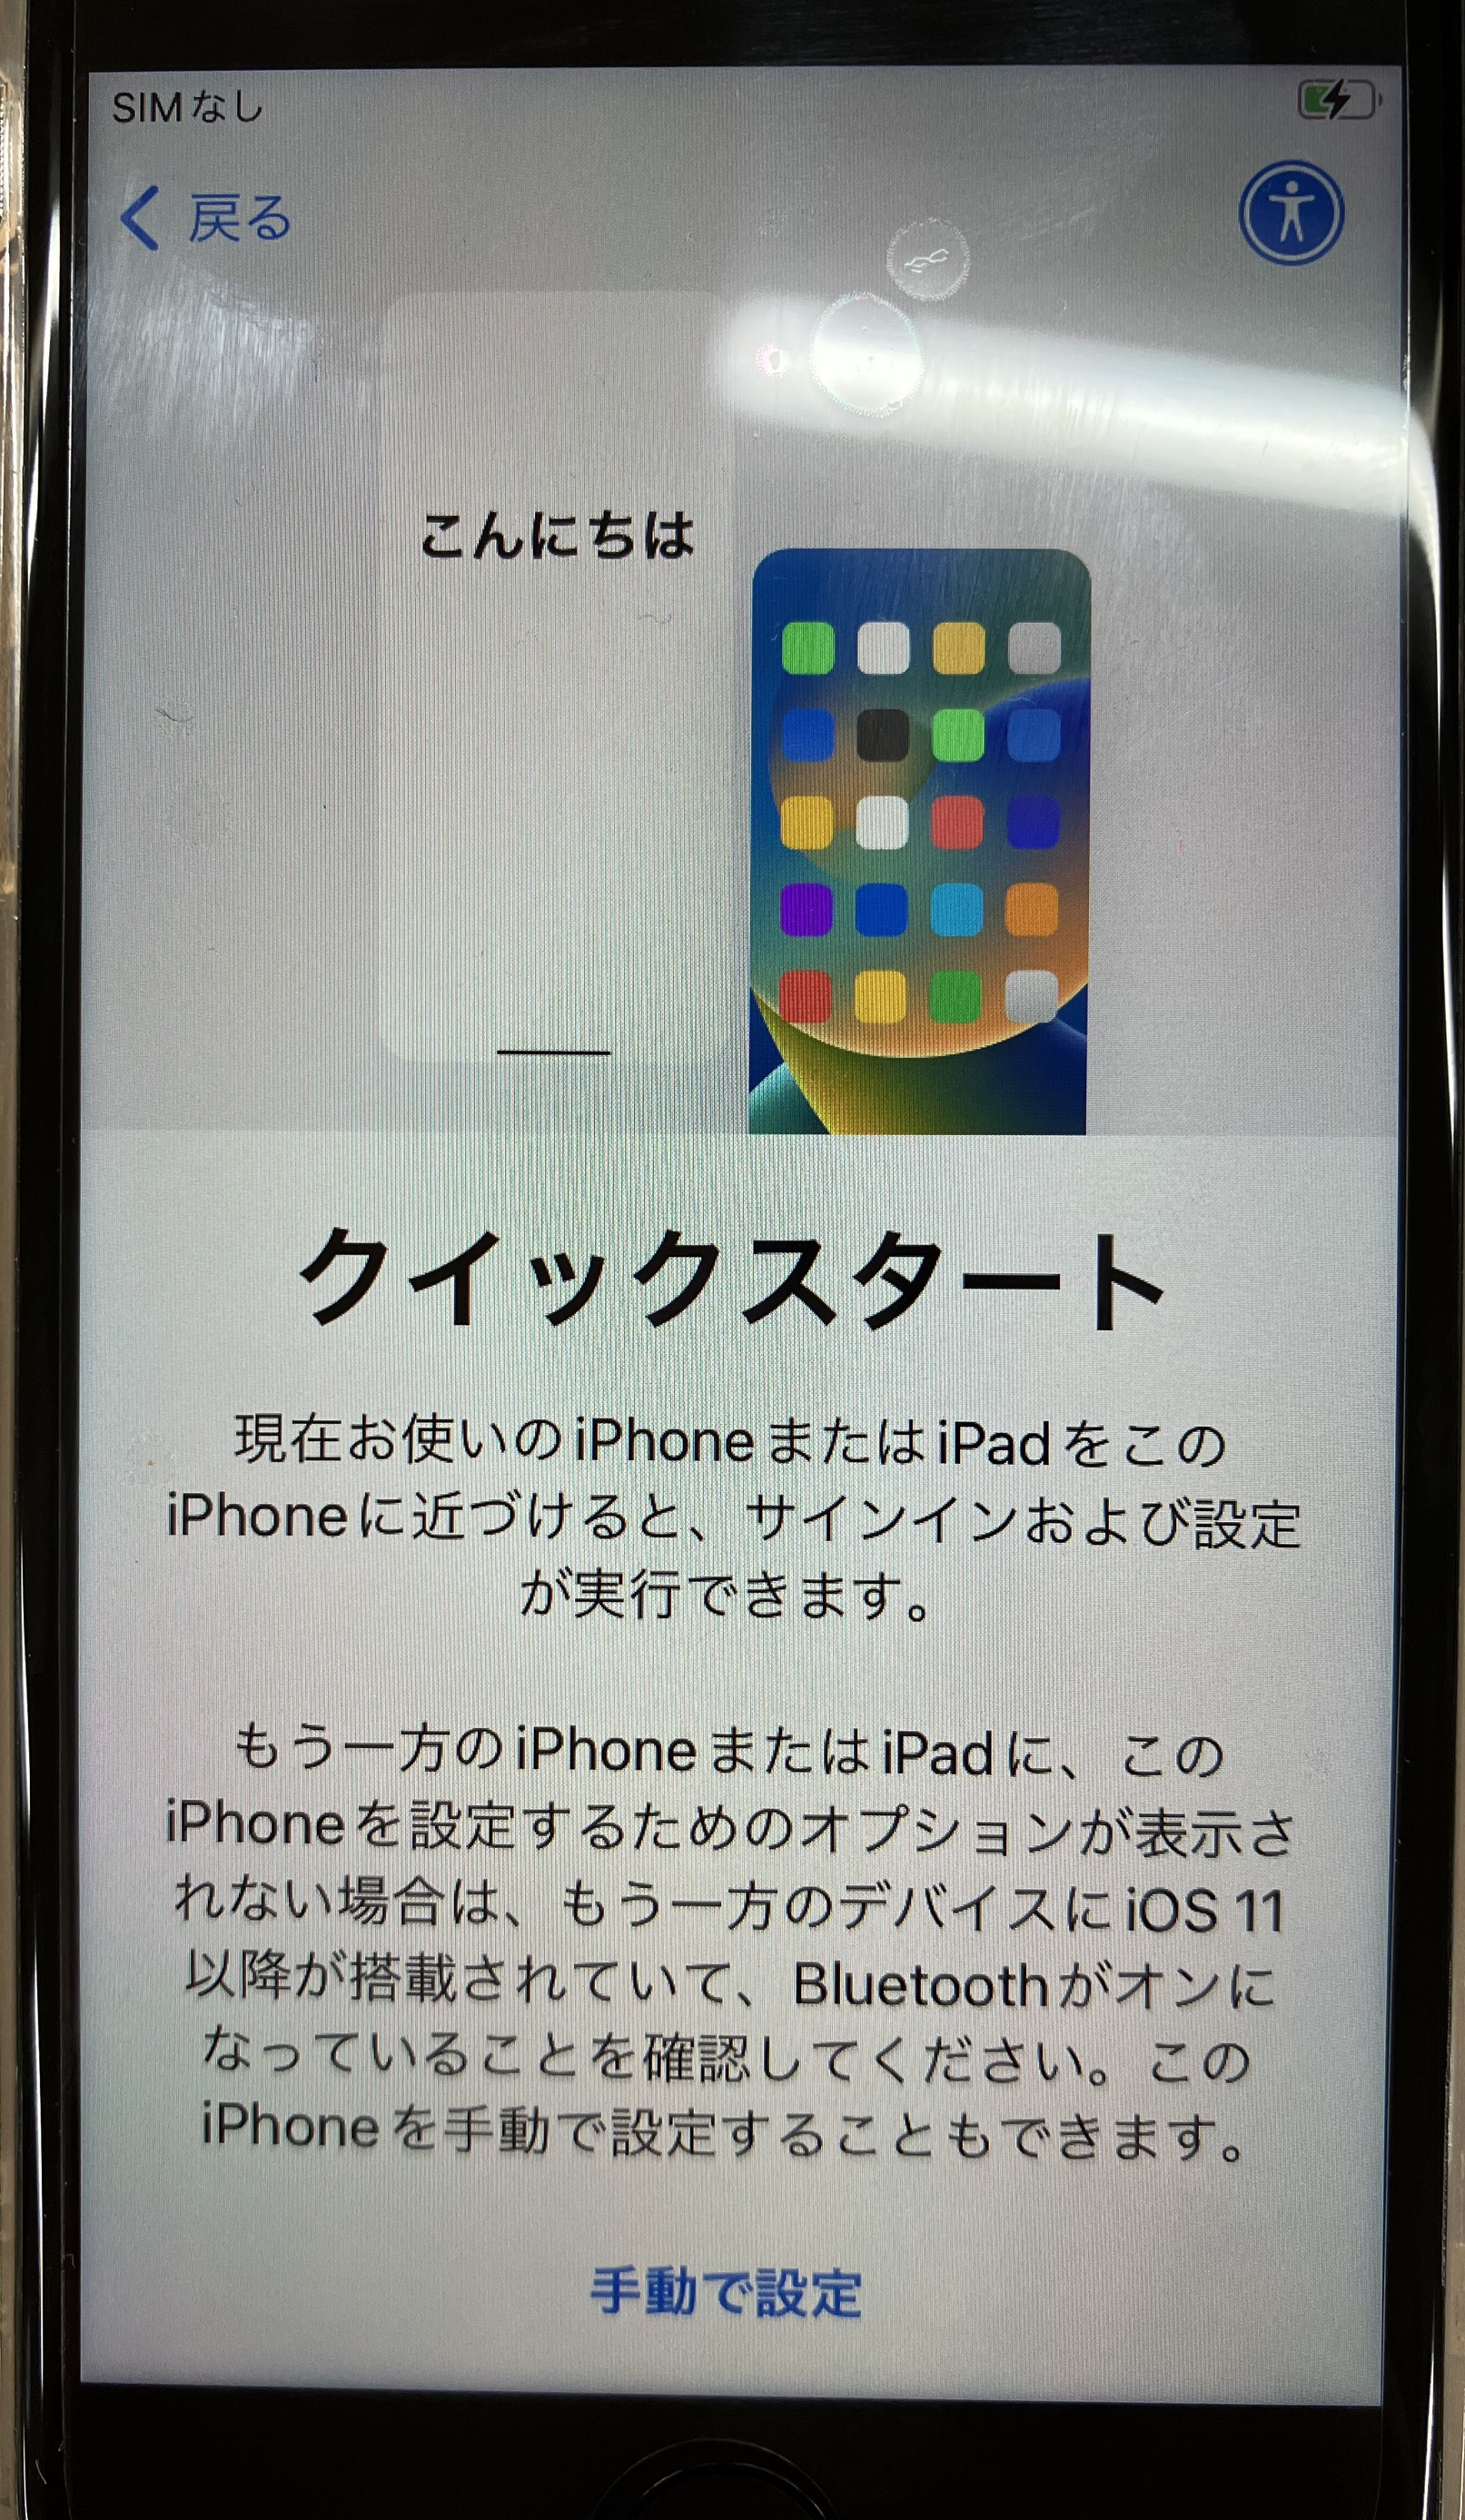 iPhone:クイックスタートの画面が表示されたら古いiPhoneを新しいiPhoneへ近づける